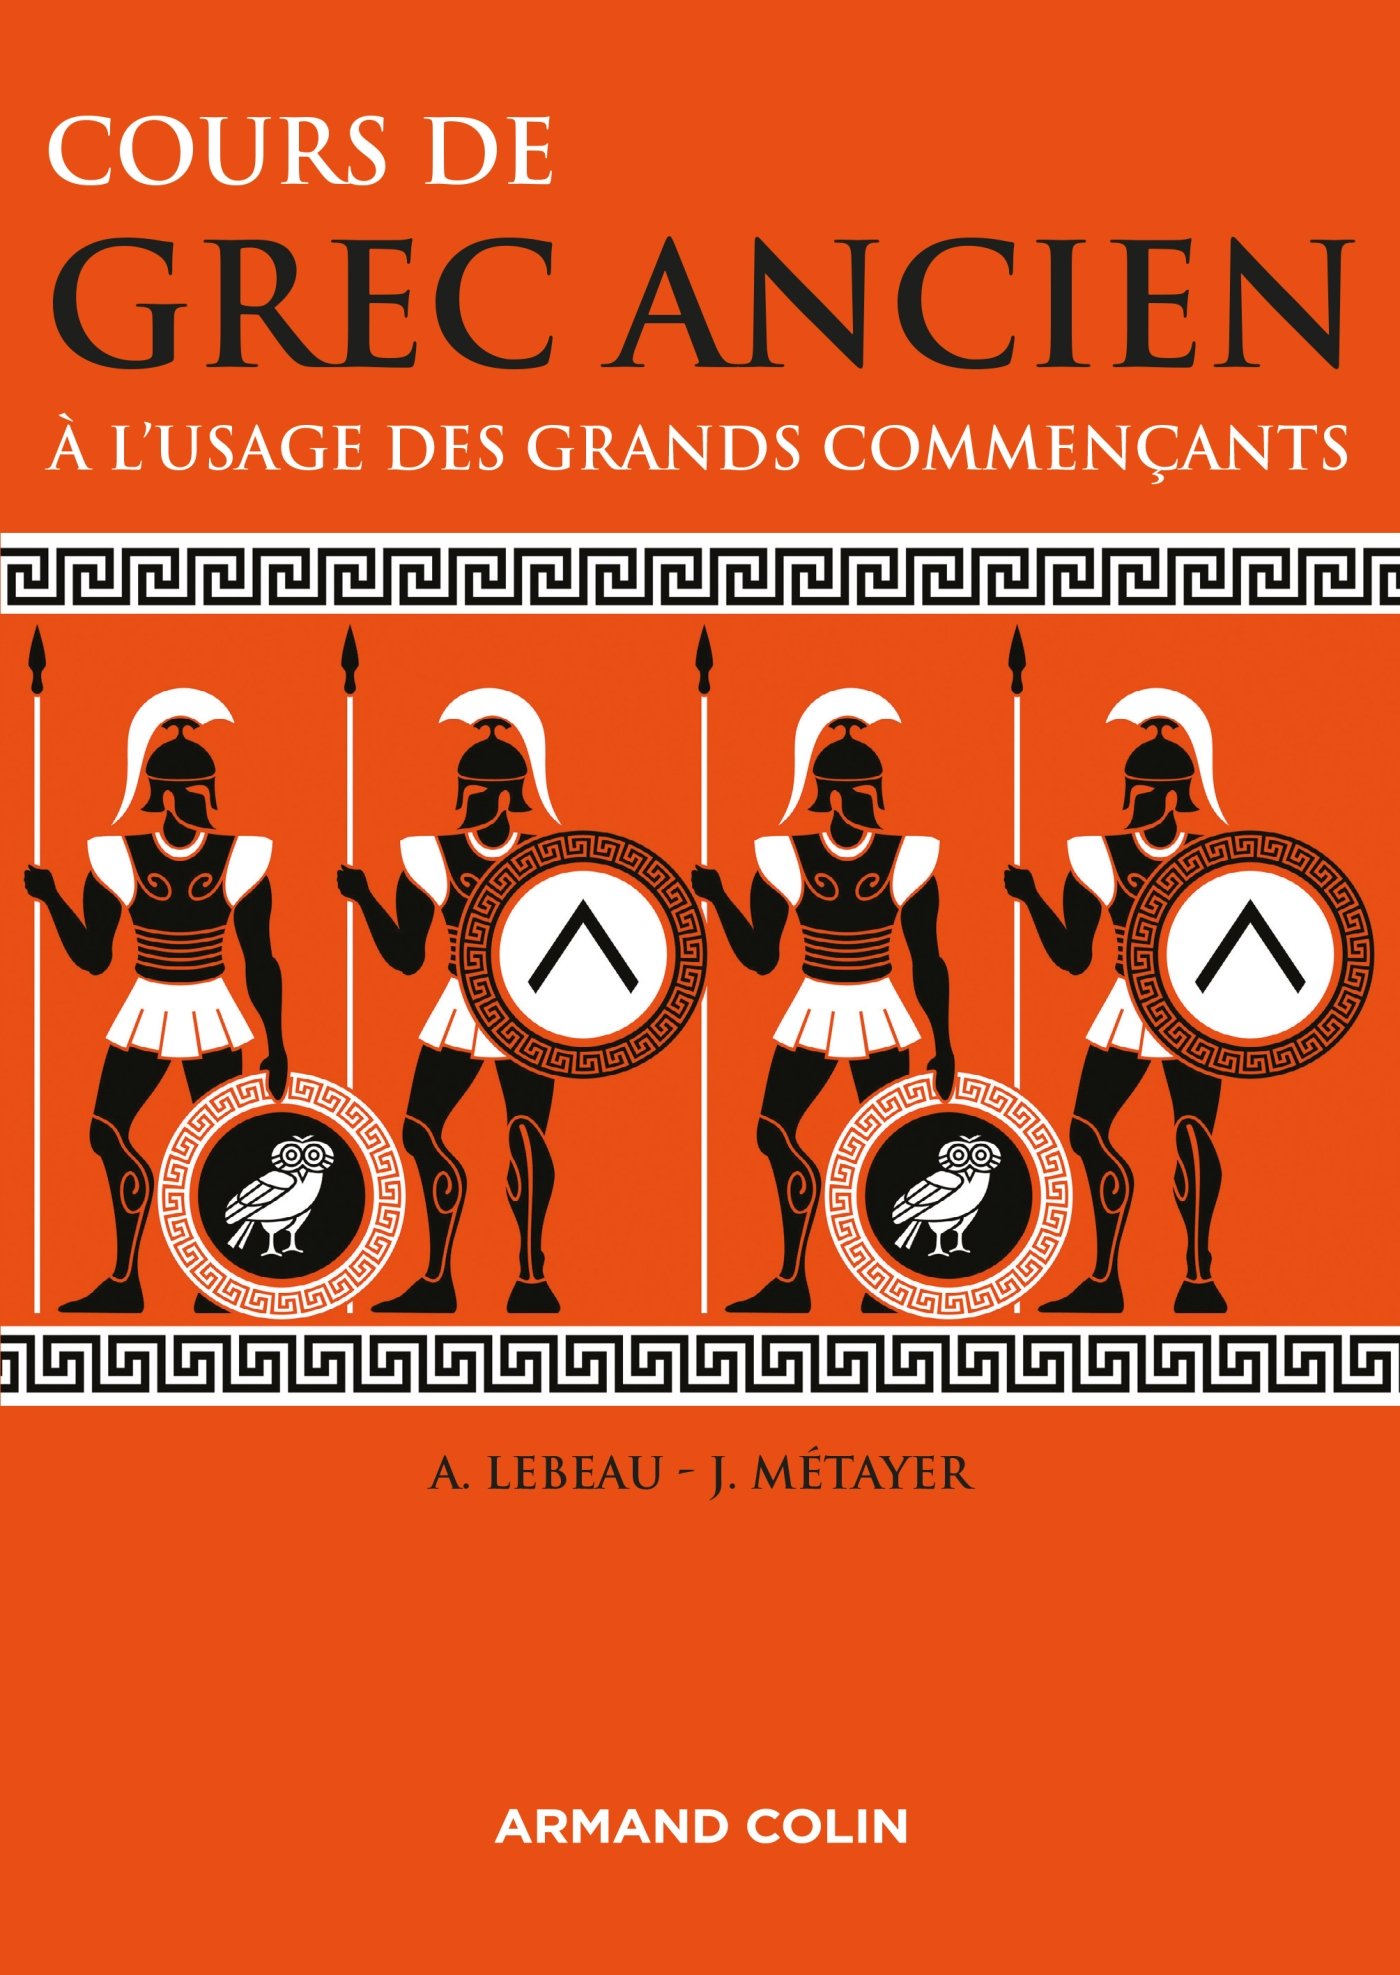 Cours de grec ancien. À l'usage des grands commençants, 2016, 264 p.